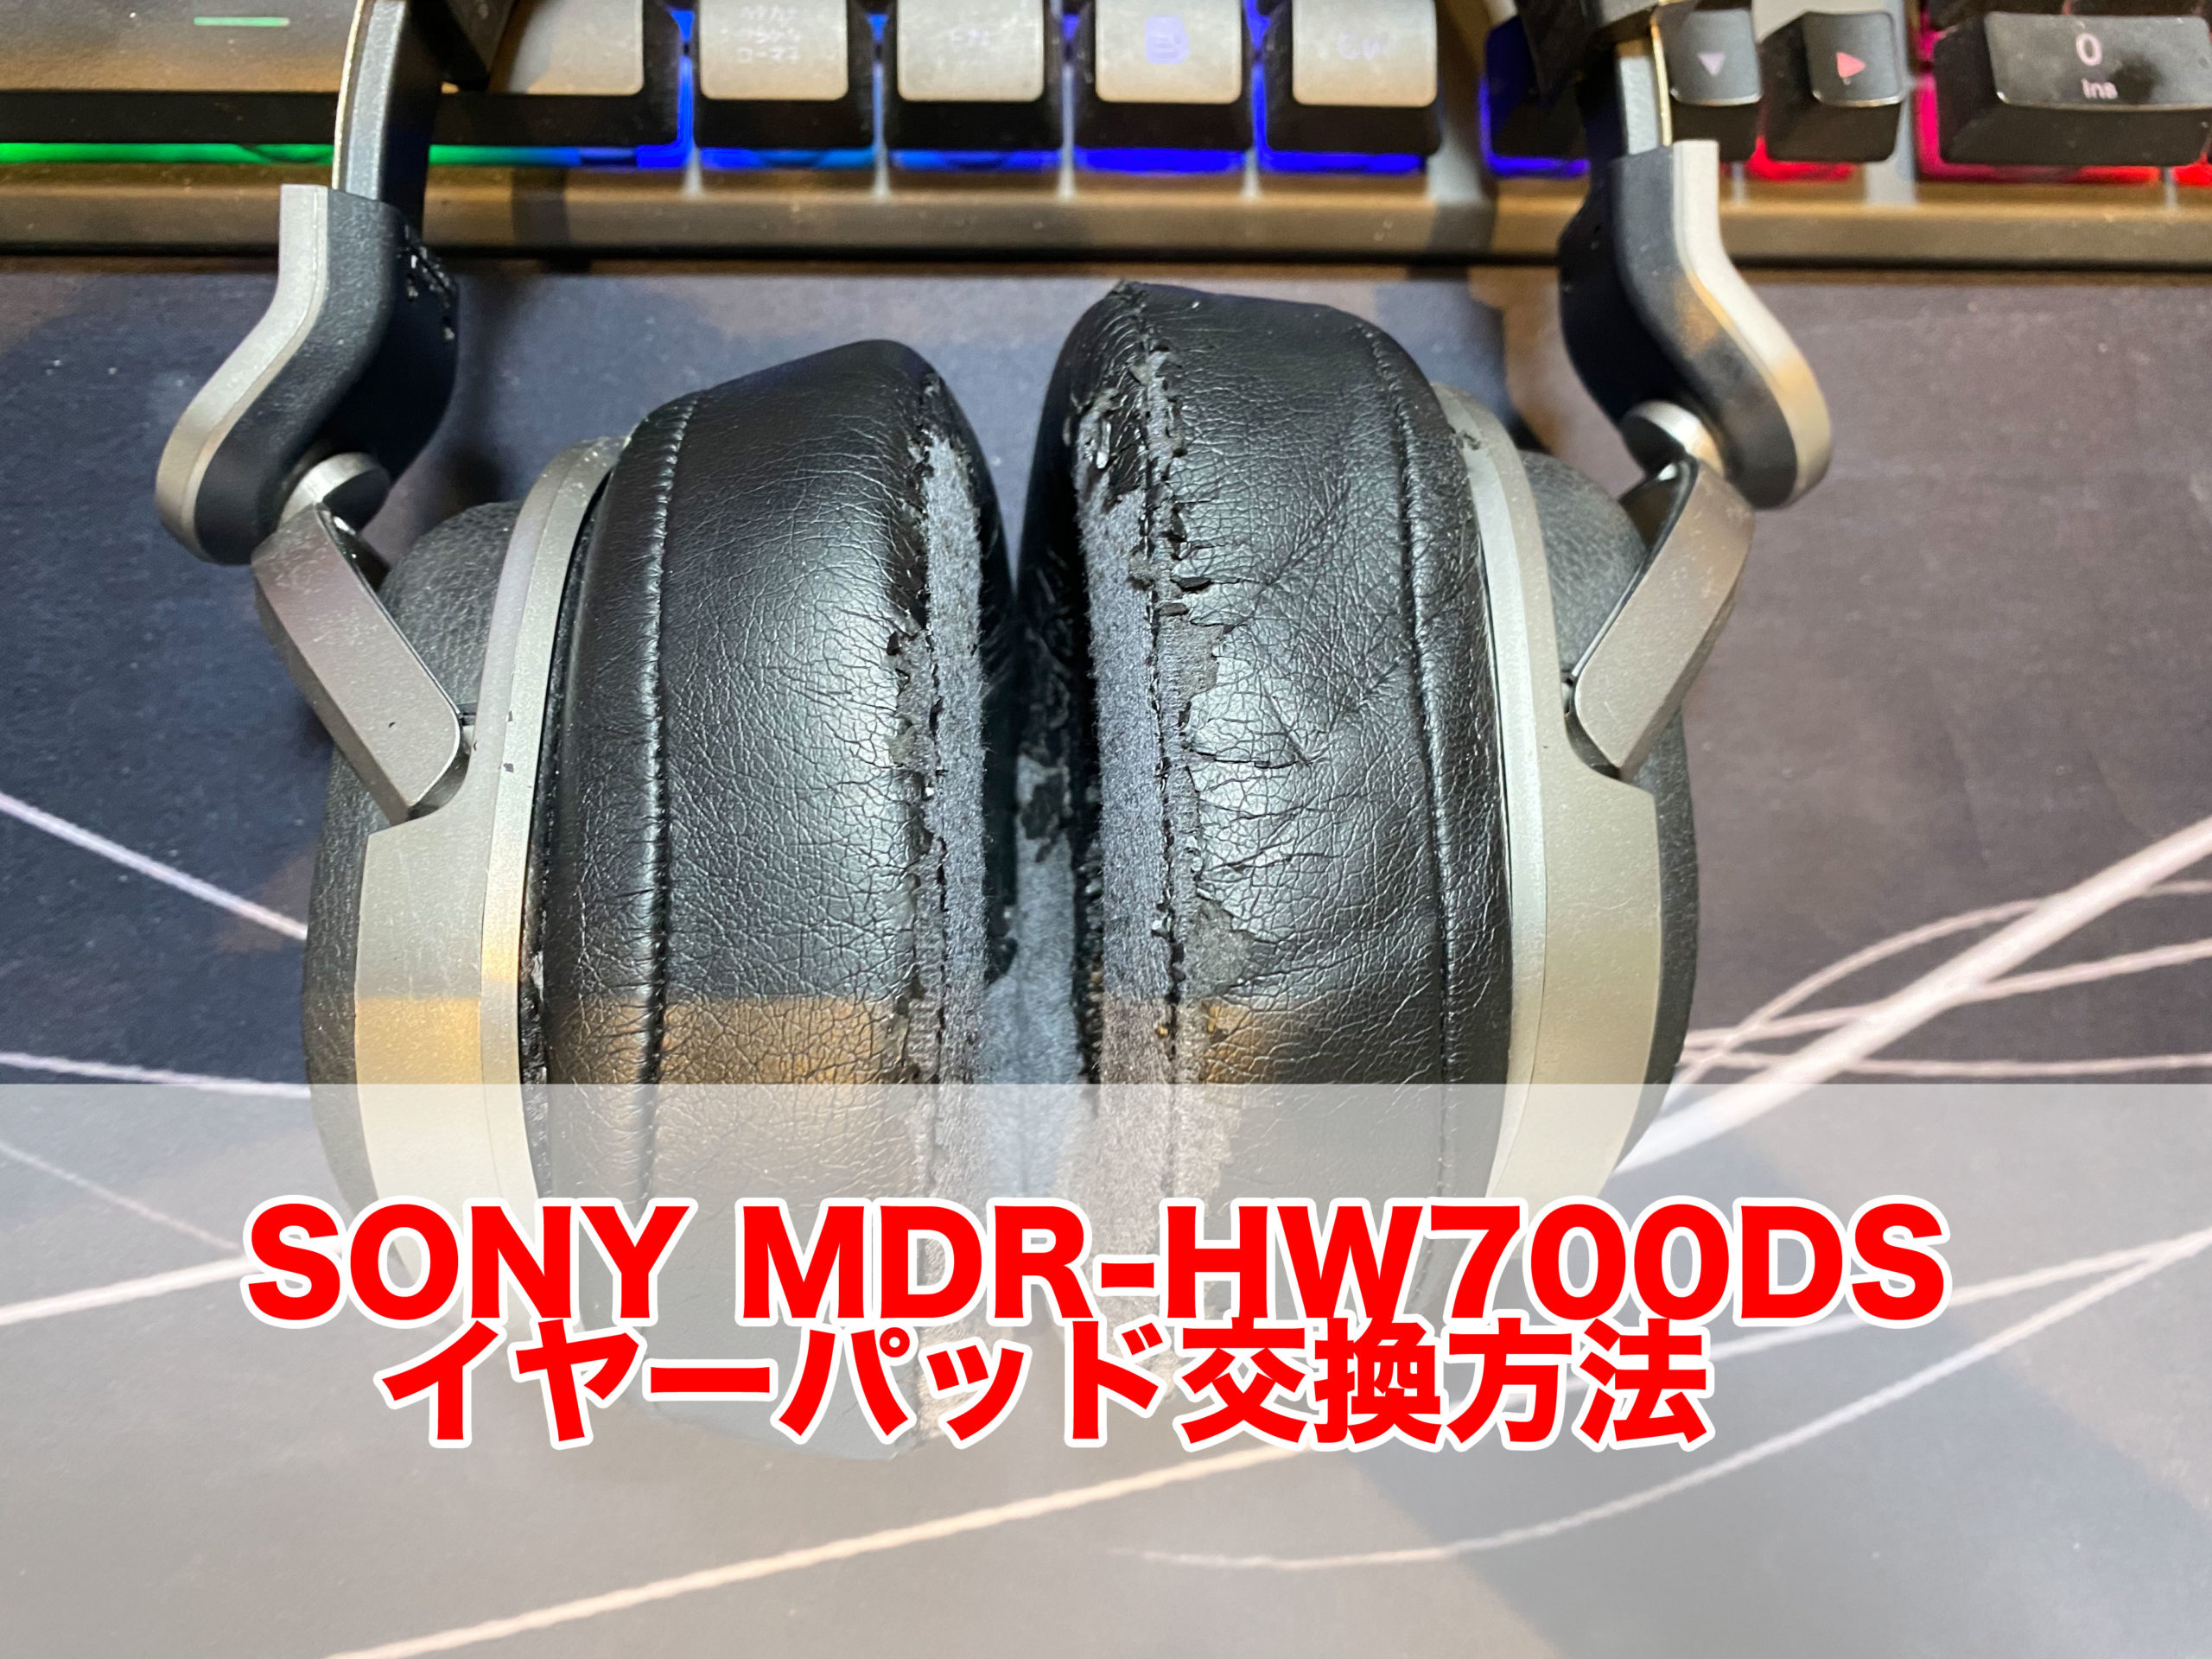 SONY ヘッドホン MDR-HW700DS